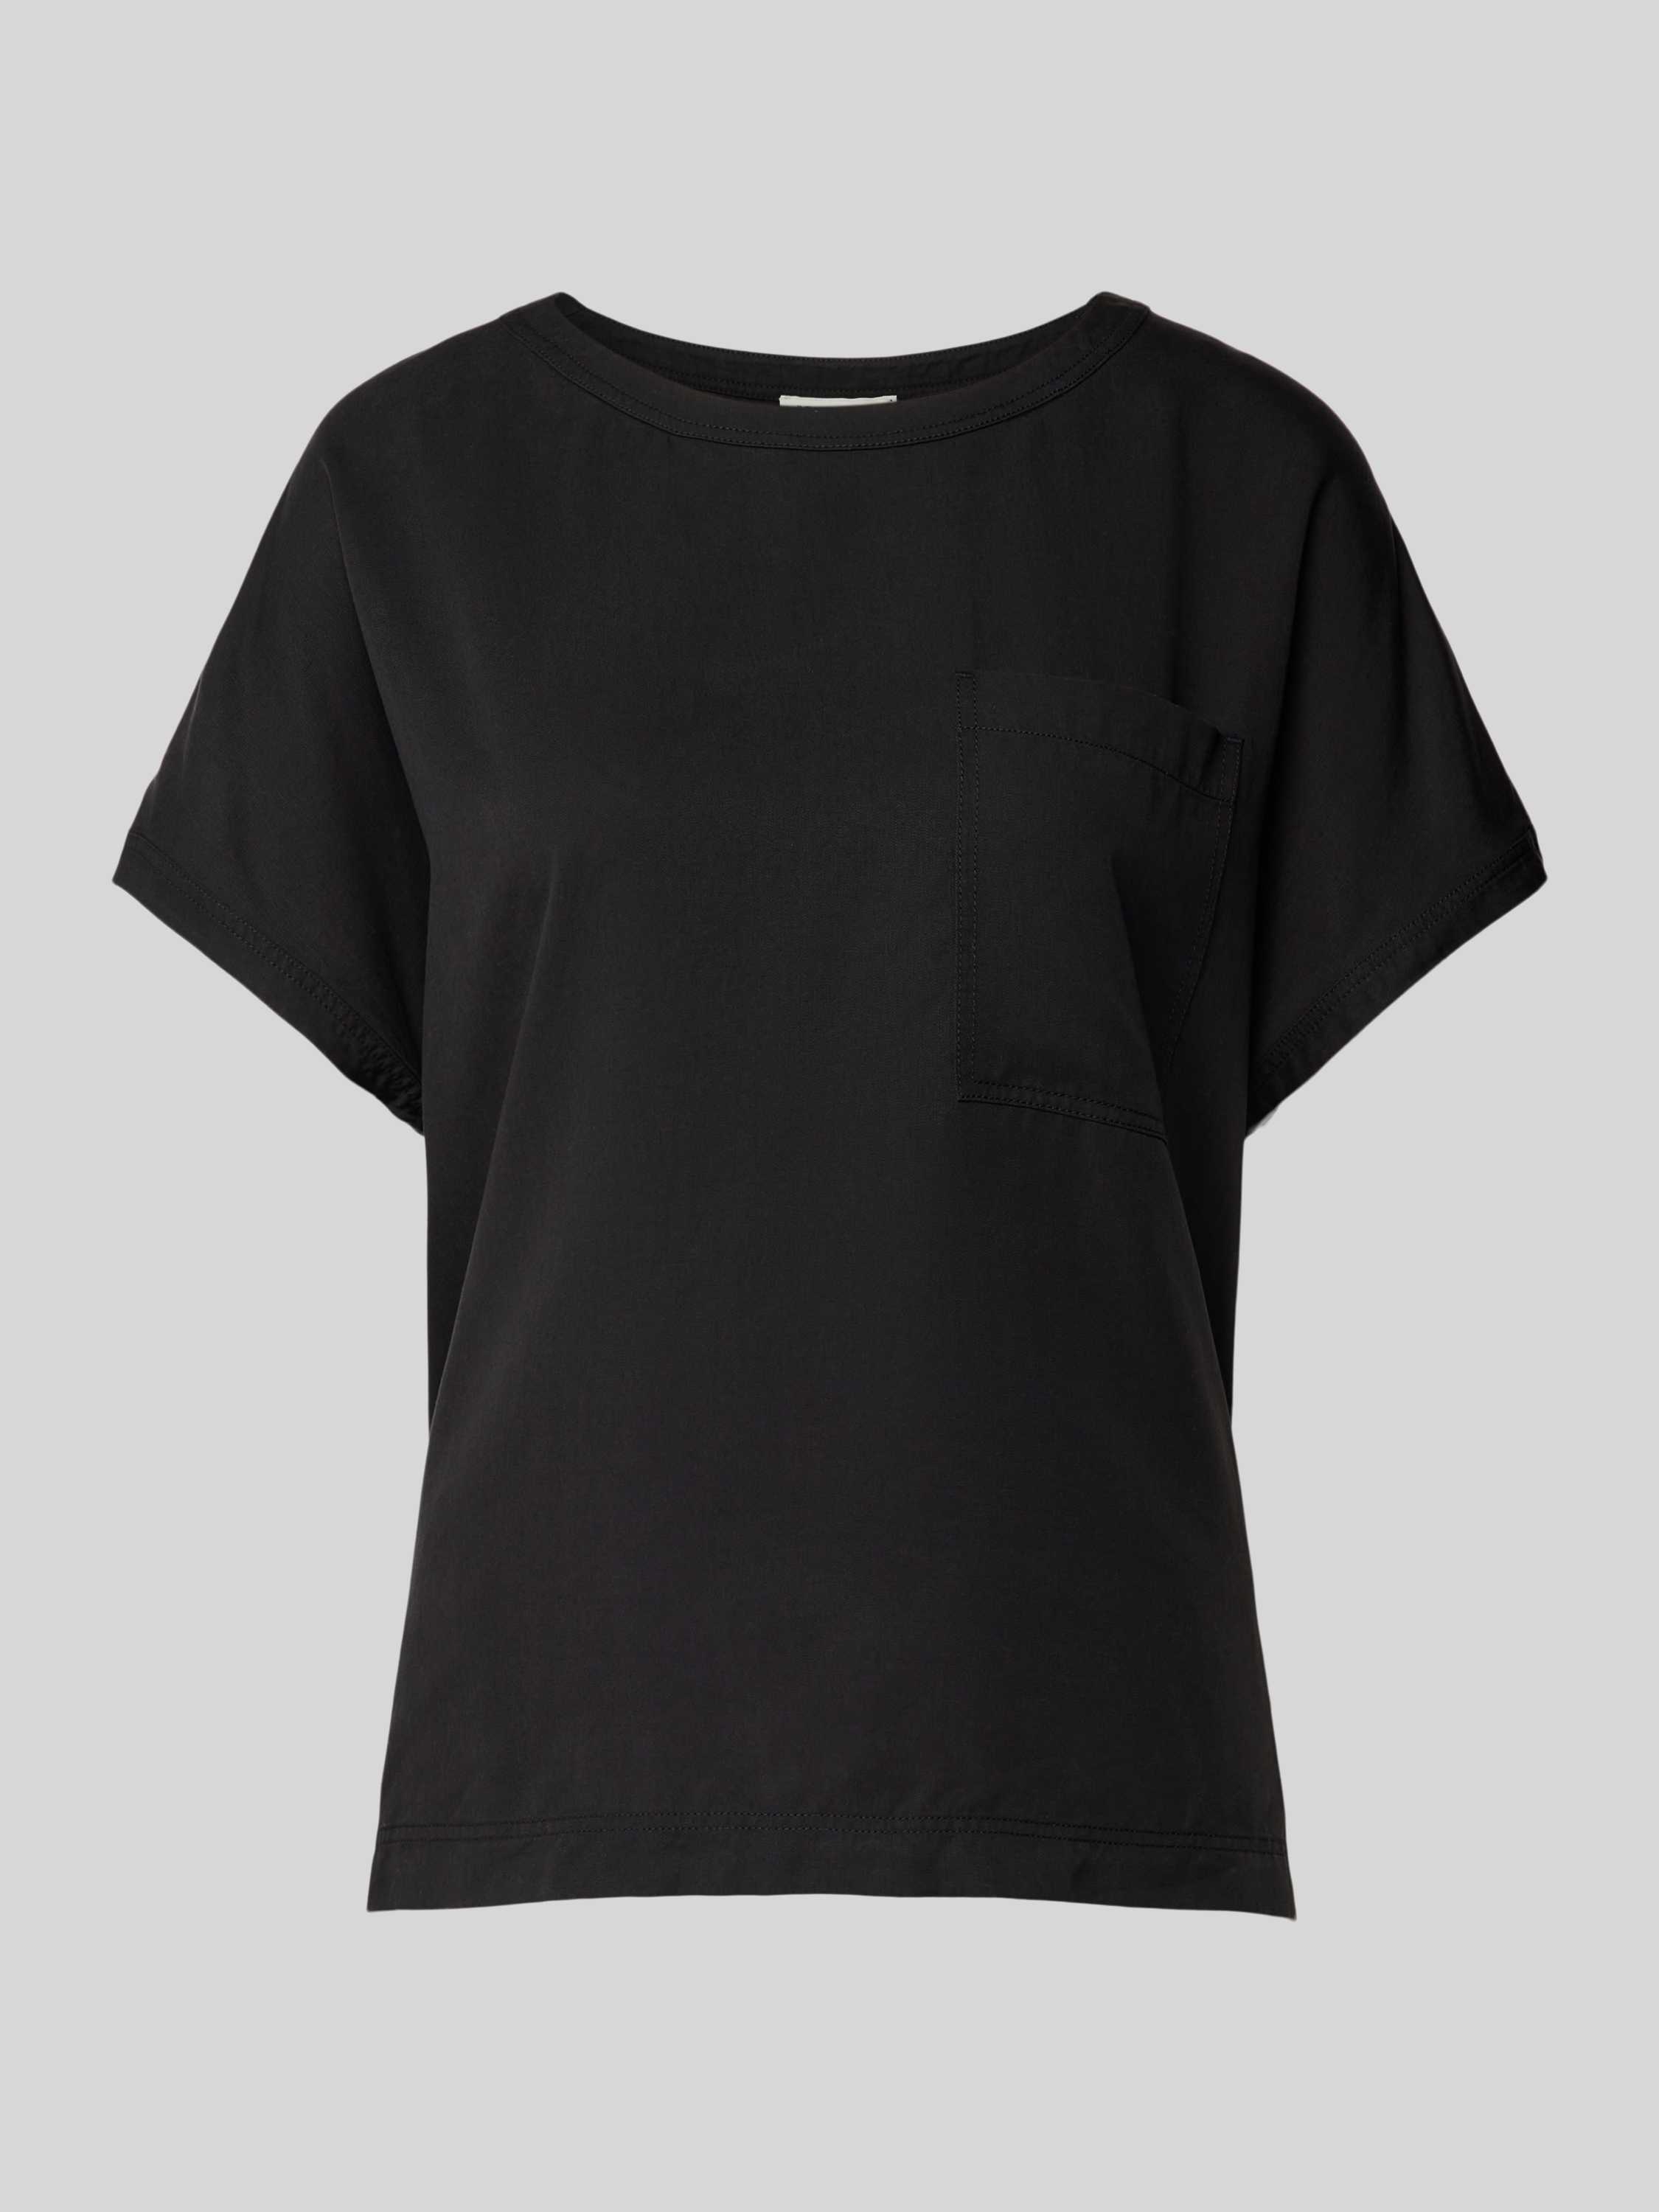 Marc O'Polo Gewone blouse shirt Black Dames